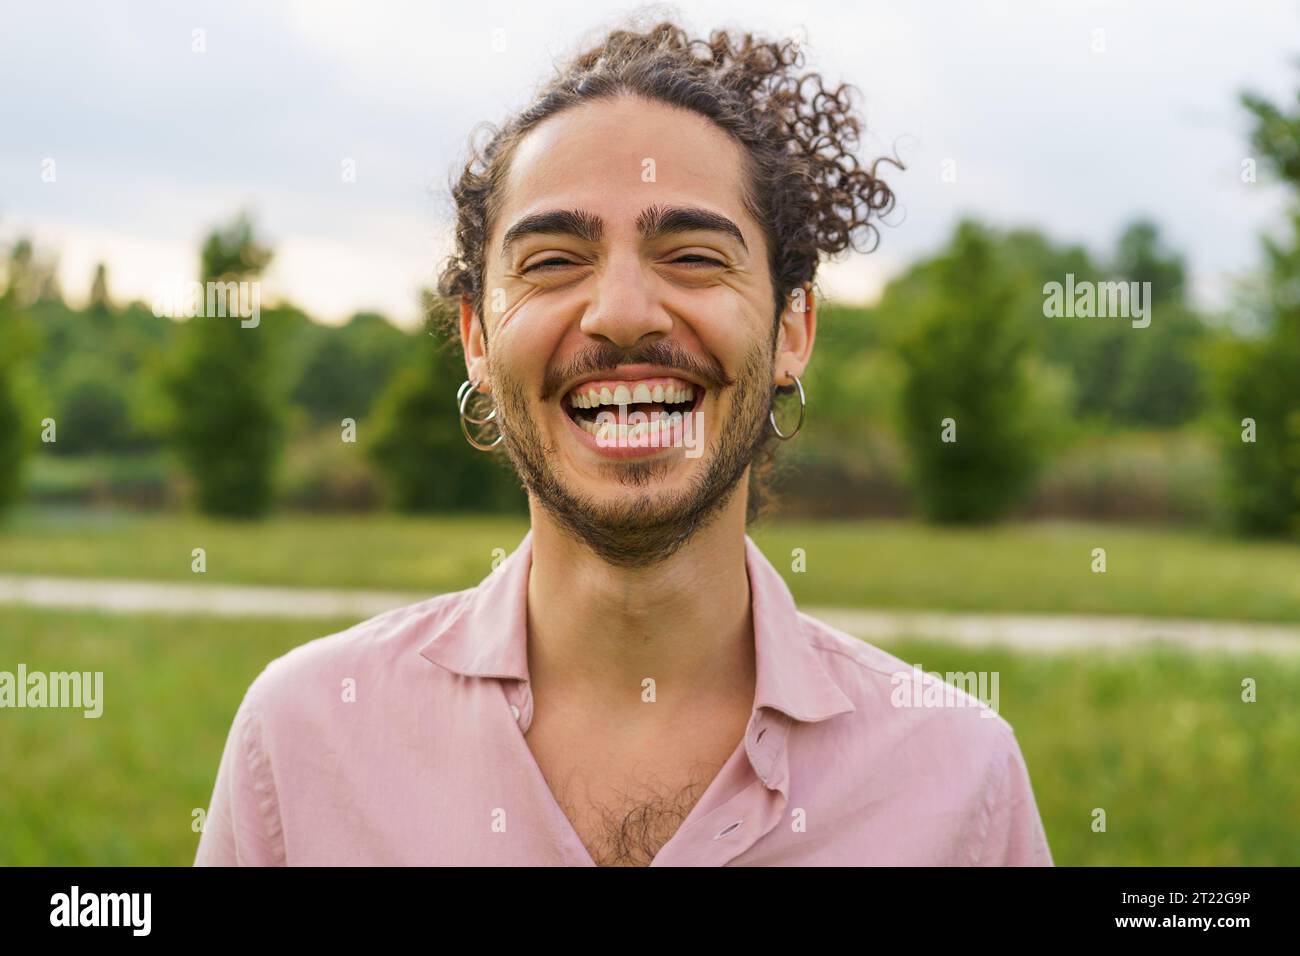 Außenporträt eines jungen Mannes mit lockigen Haaren, die zurückgebunden sind, und lachend mit den Augen. Er trägt Ohrringe und einen Bart. Die Aufnahme, aufgenommen Stockfoto